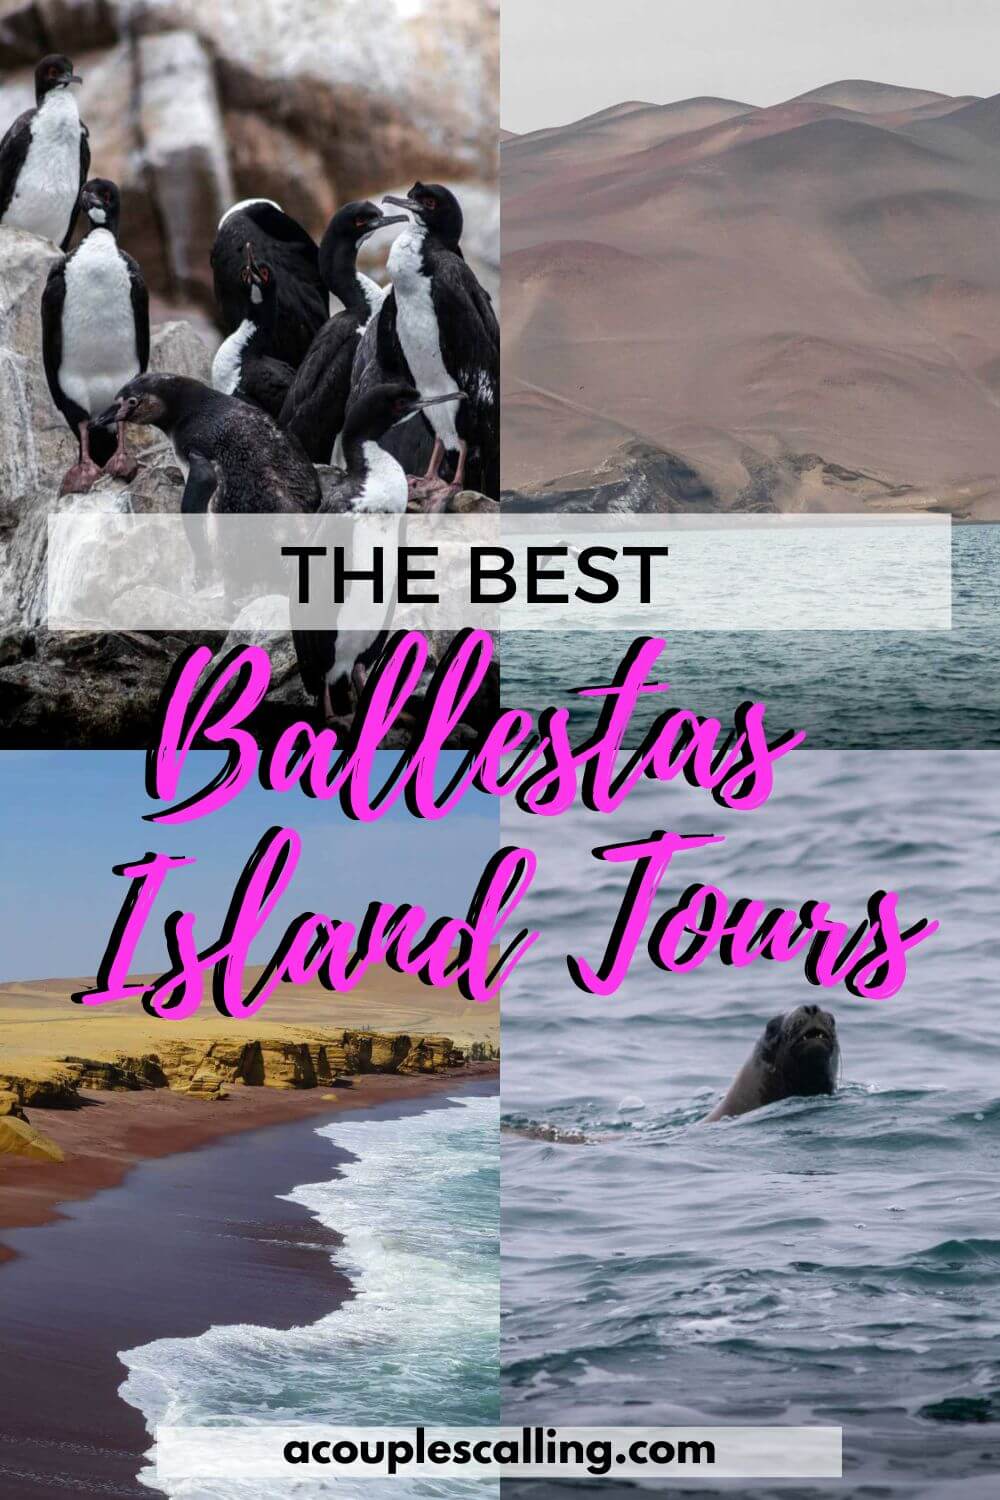 Ballestas Island tours